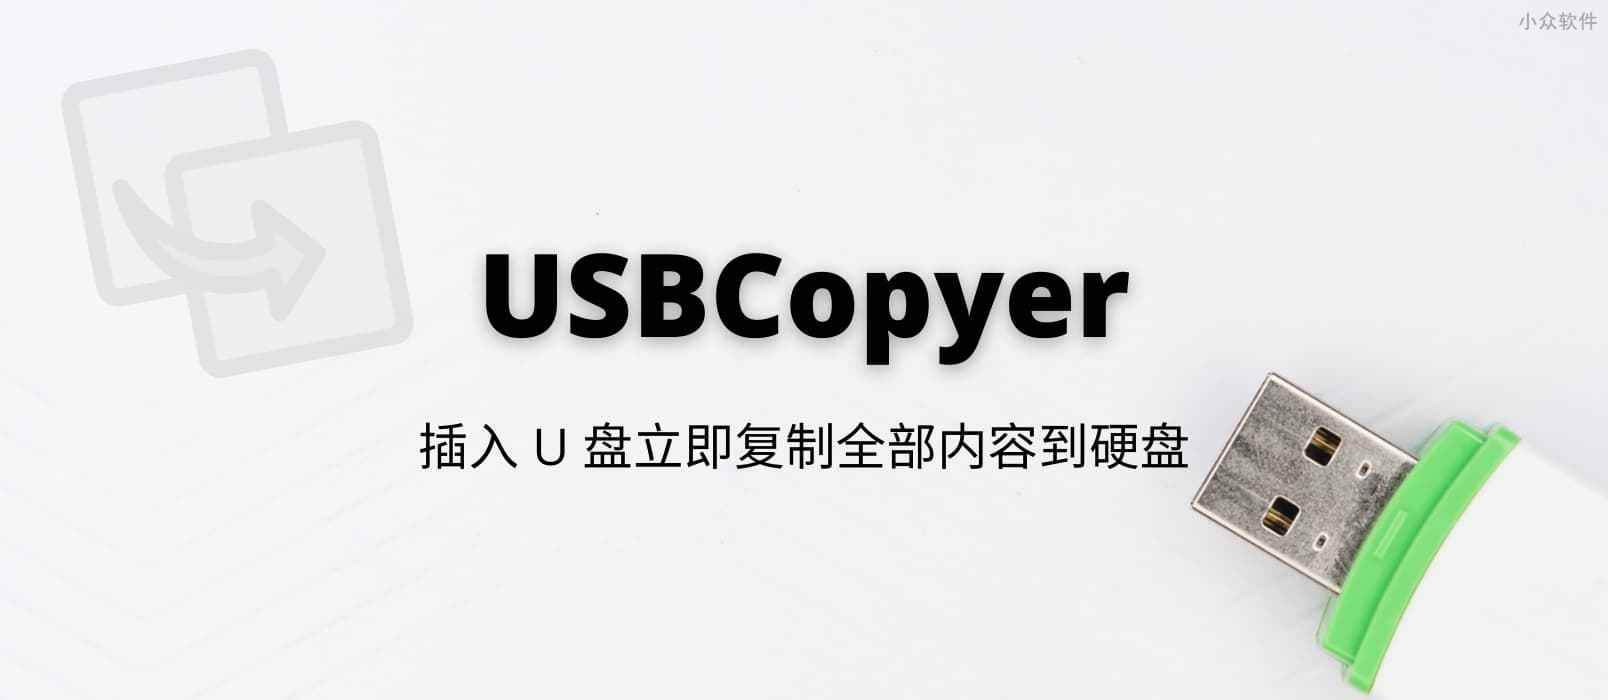 USBCopyer - USB 后台静默拷贝工具，插入 U 盘立即复制全部内容到硬盘[Windows]